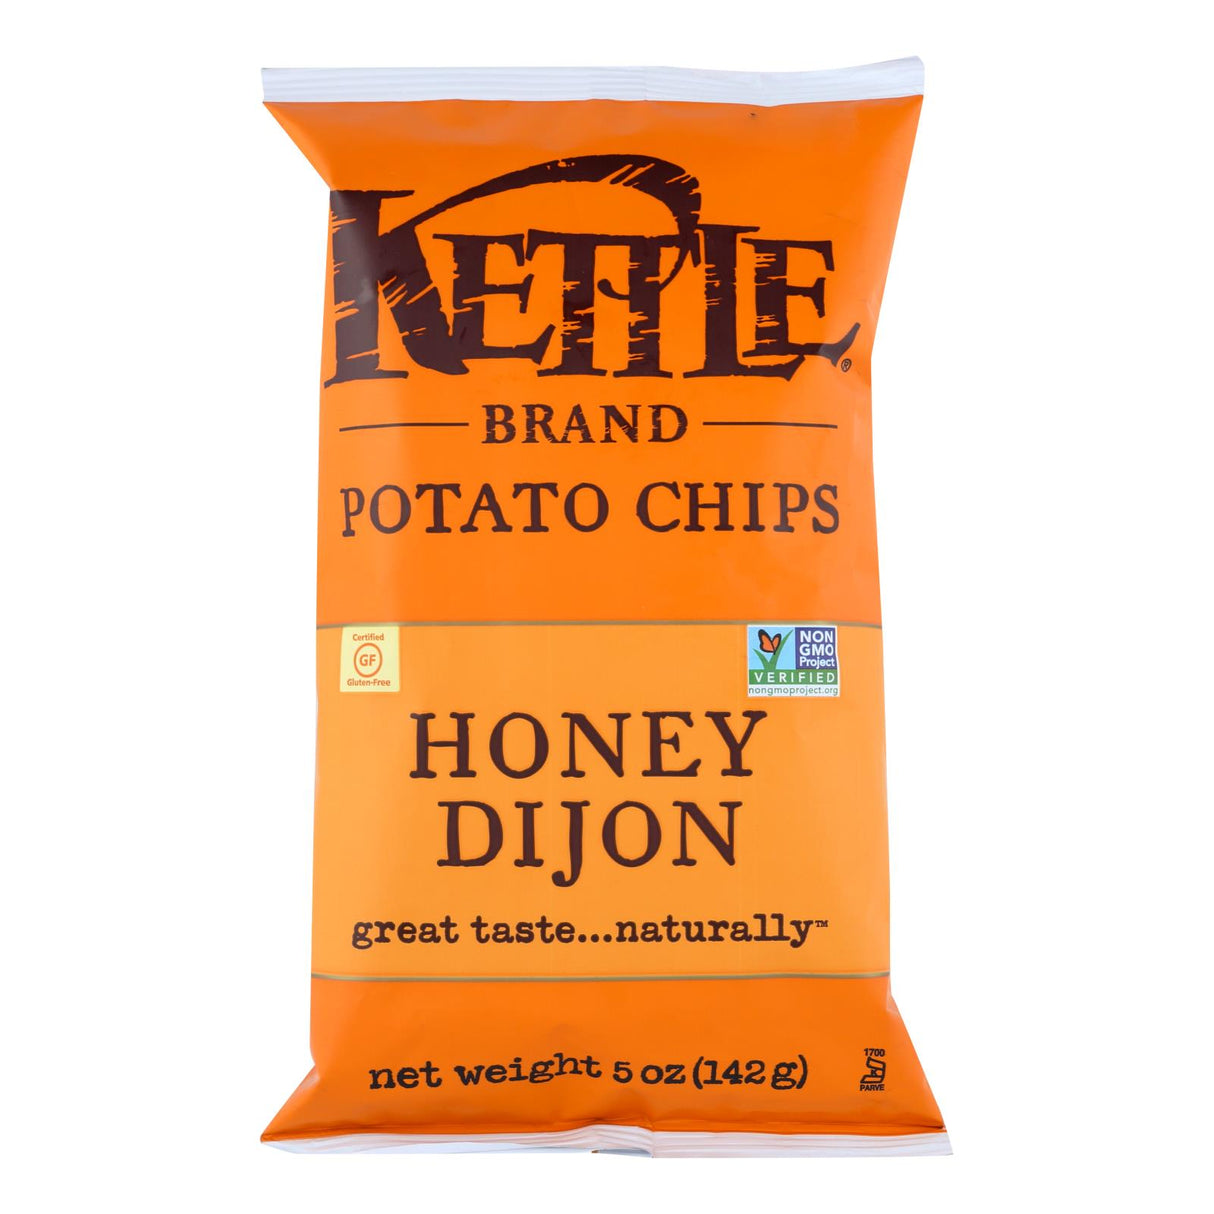 Kettle Brand Potato Chips - Honey Dijon - 5 Oz - Case Of 15